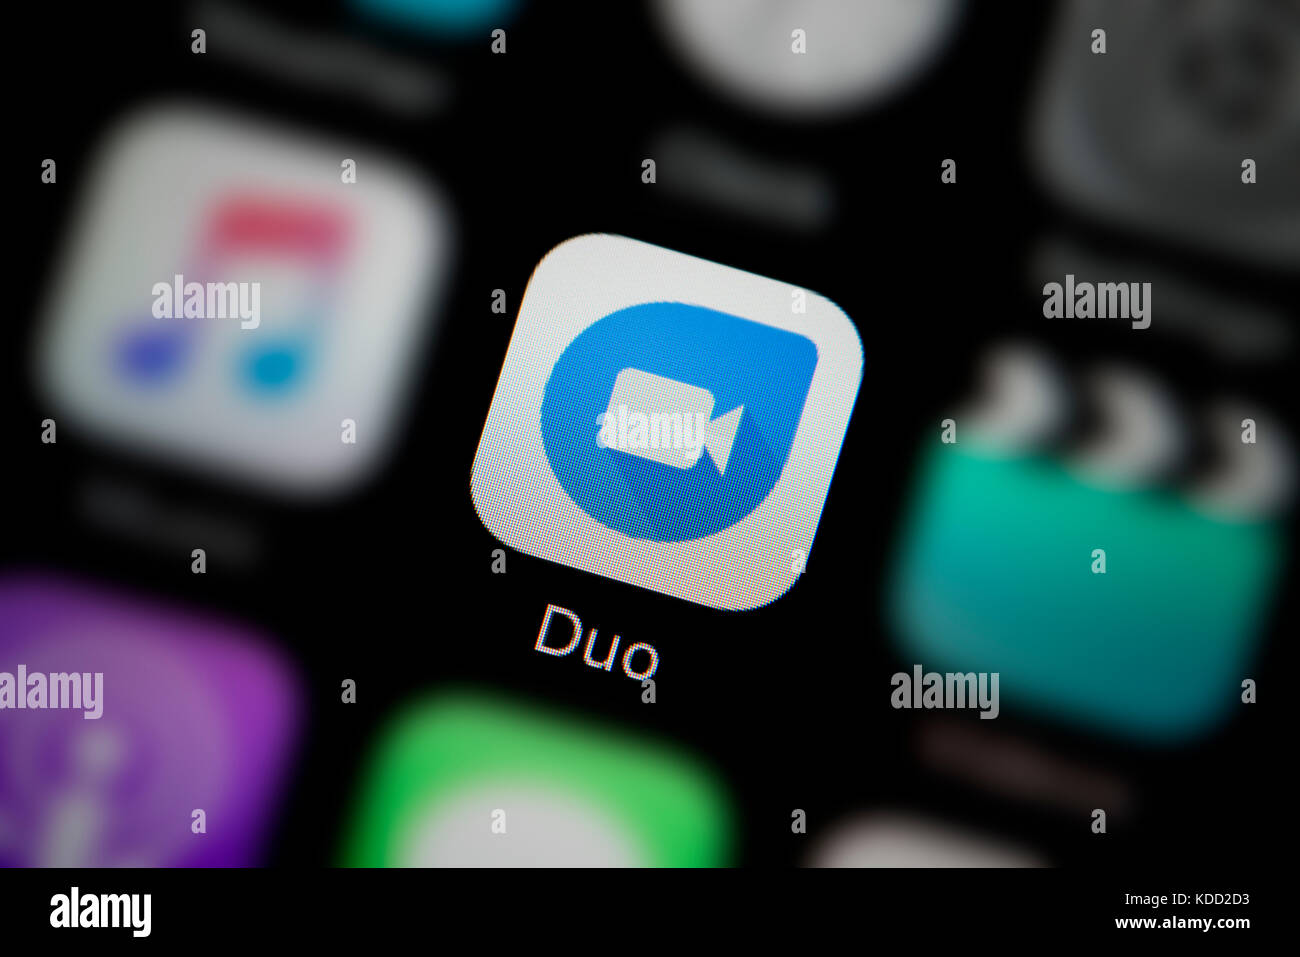 Un gros plan sur le logo représentant l'icône Google app duo, comme on le voit sur l'écran d'un téléphone intelligent (usage éditorial uniquement) Banque D'Images